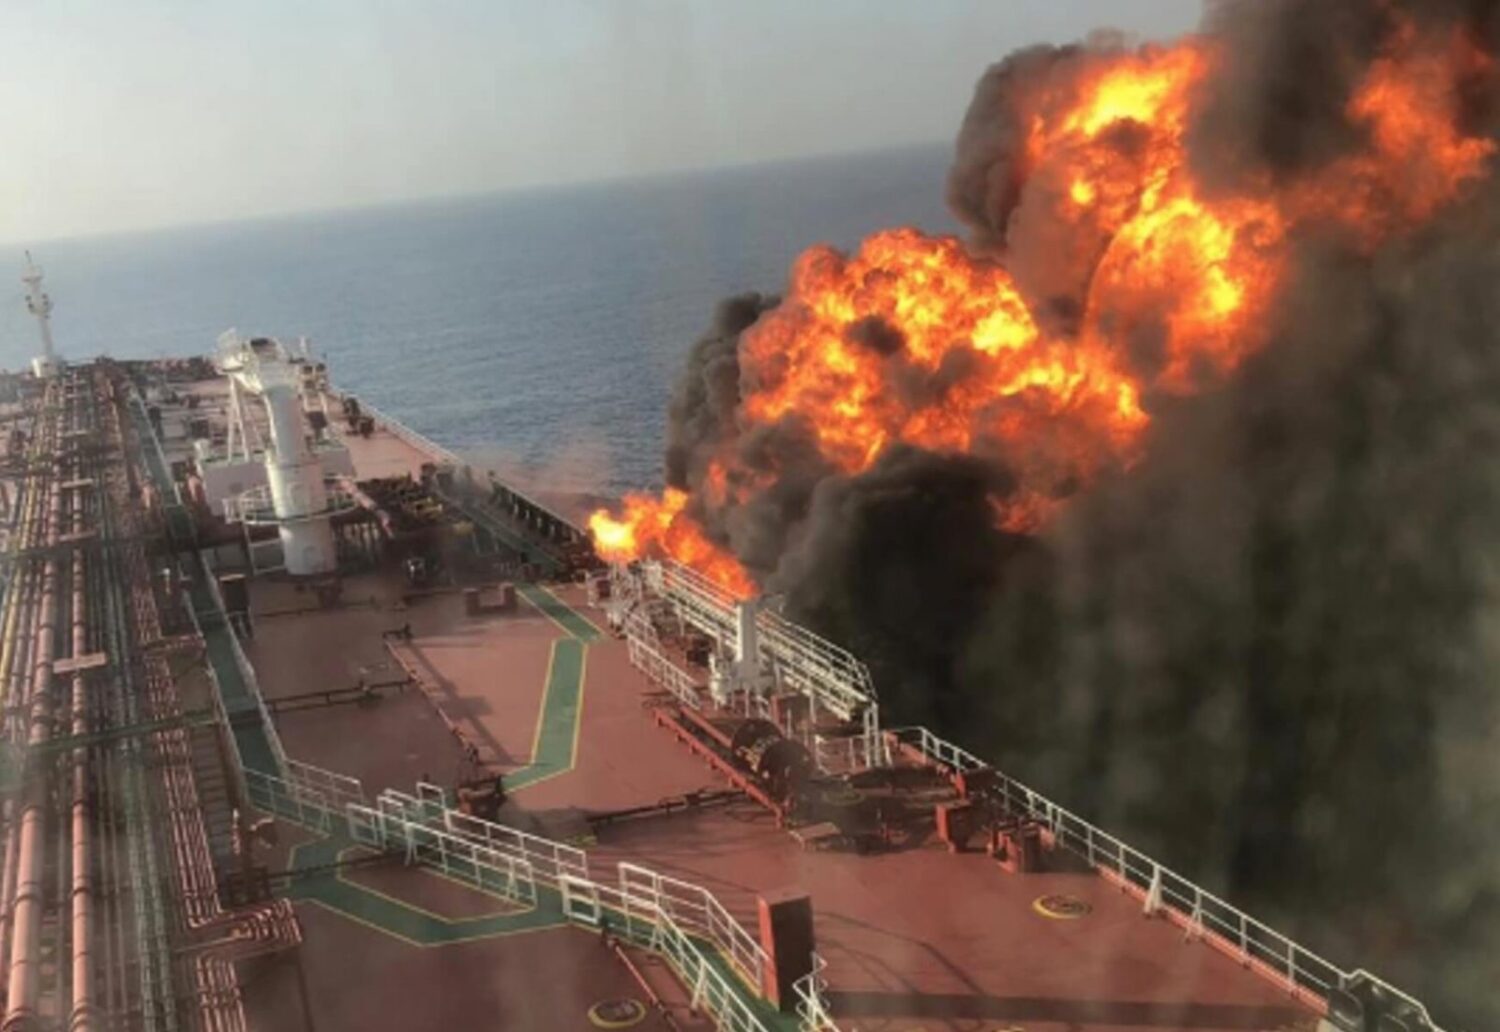 Έκρηξη σε τανκερ στο λιμάνι της Τζέντα - e-Nautilia.gr | Το Ελληνικό Portal για την Ναυτιλία. Τελευταία νέα, άρθρα, Οπτικοακουστικό Υλικό